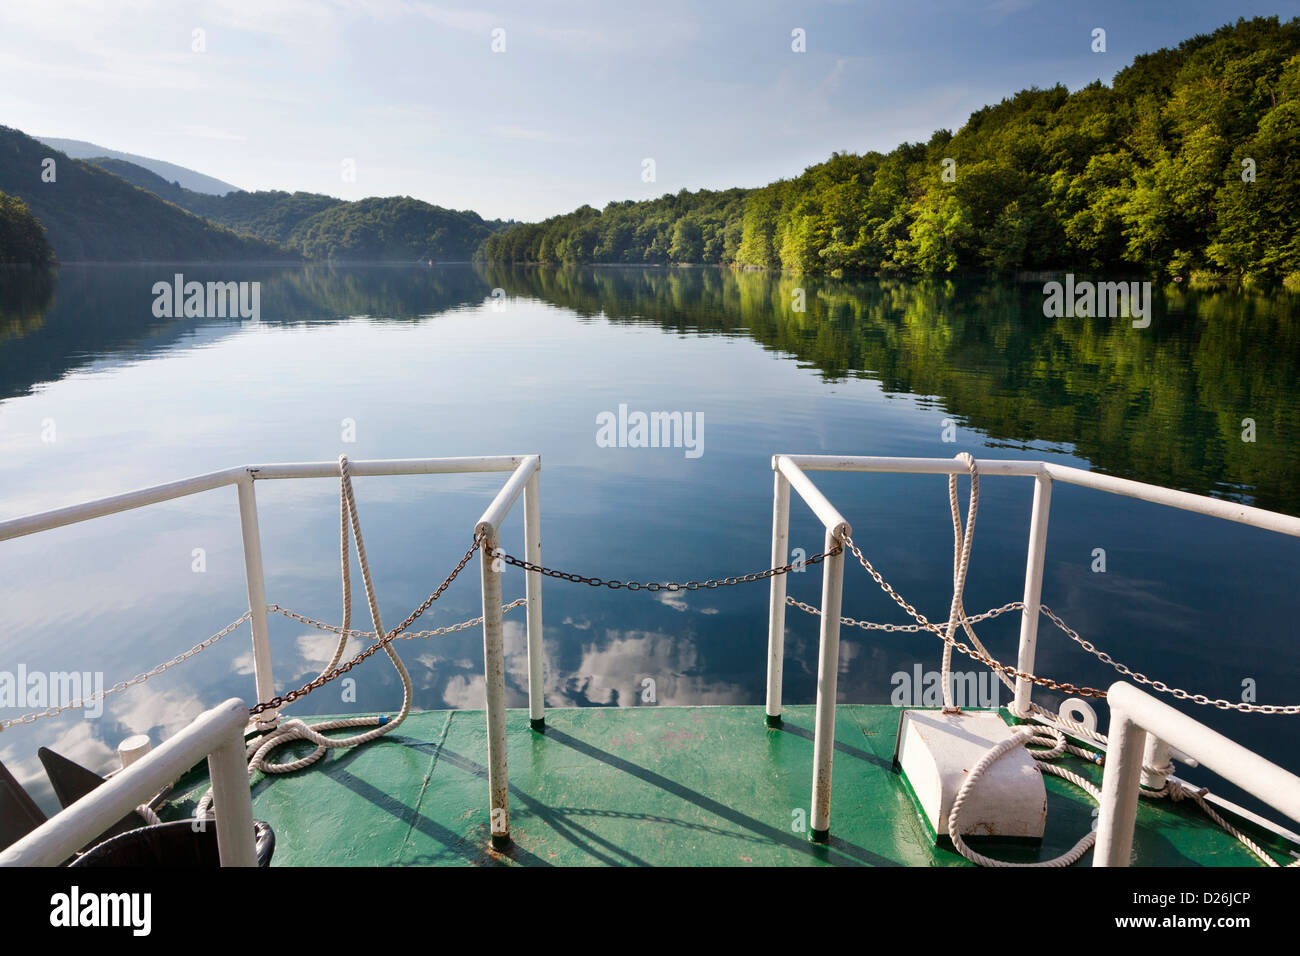 Les lacs de Plitvice dans le parc national Plitvicka Jezera. Les visiteurs qui prennent une croisière sur le lac Kozjak. L'Europe du Sud, Croatie Banque D'Images